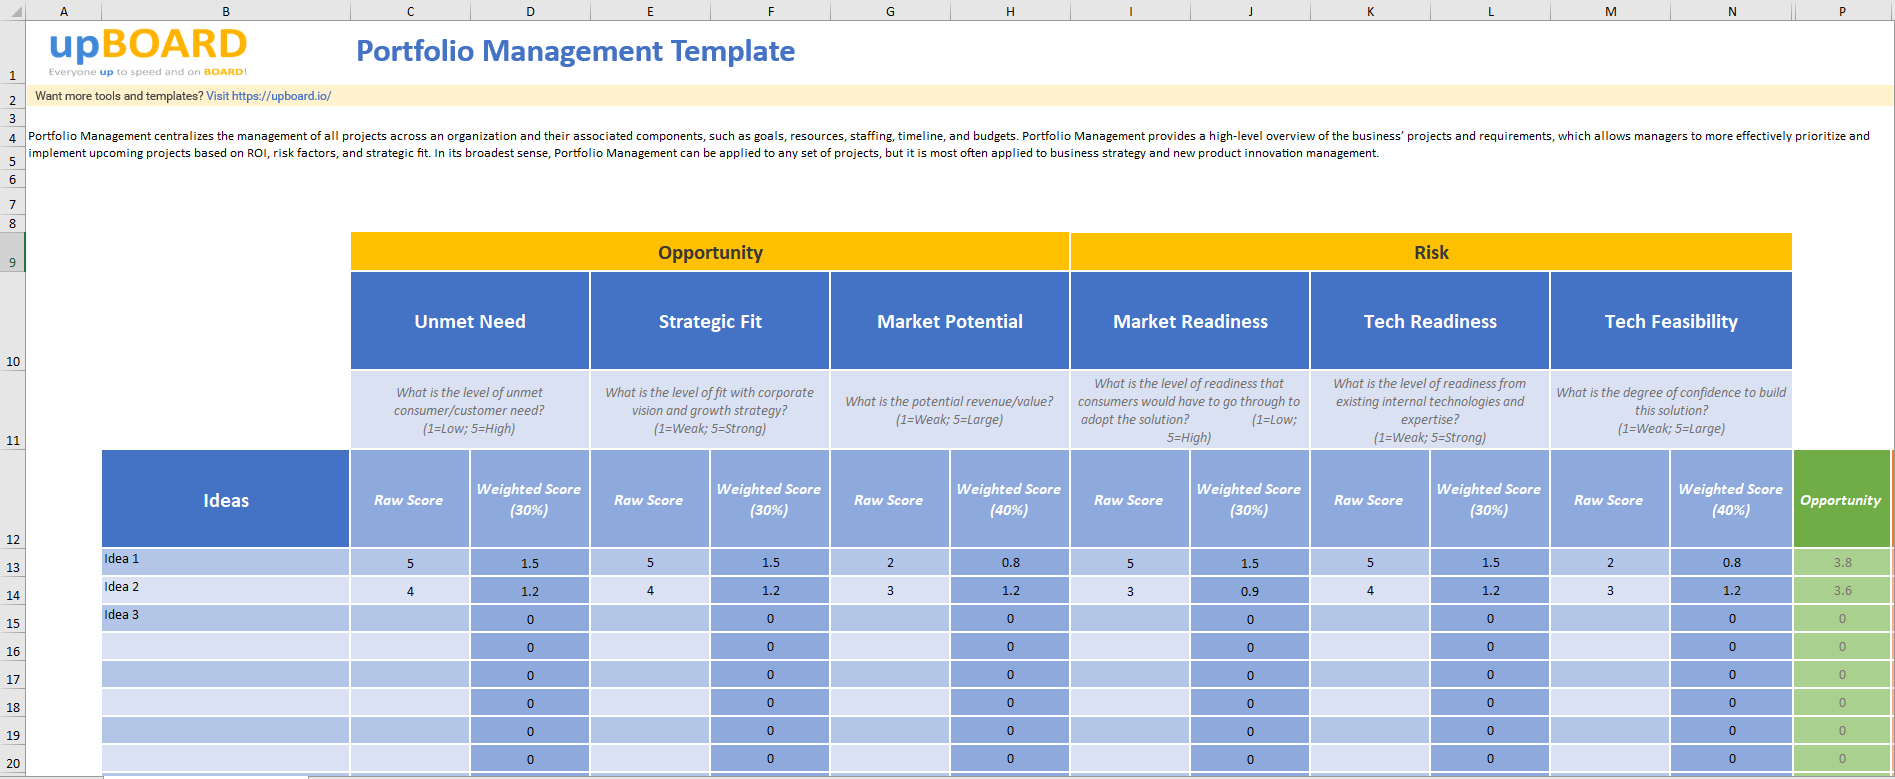 Portfolio Management Online Tools, Templates & Software Inside Portfolio Management Reporting Templates